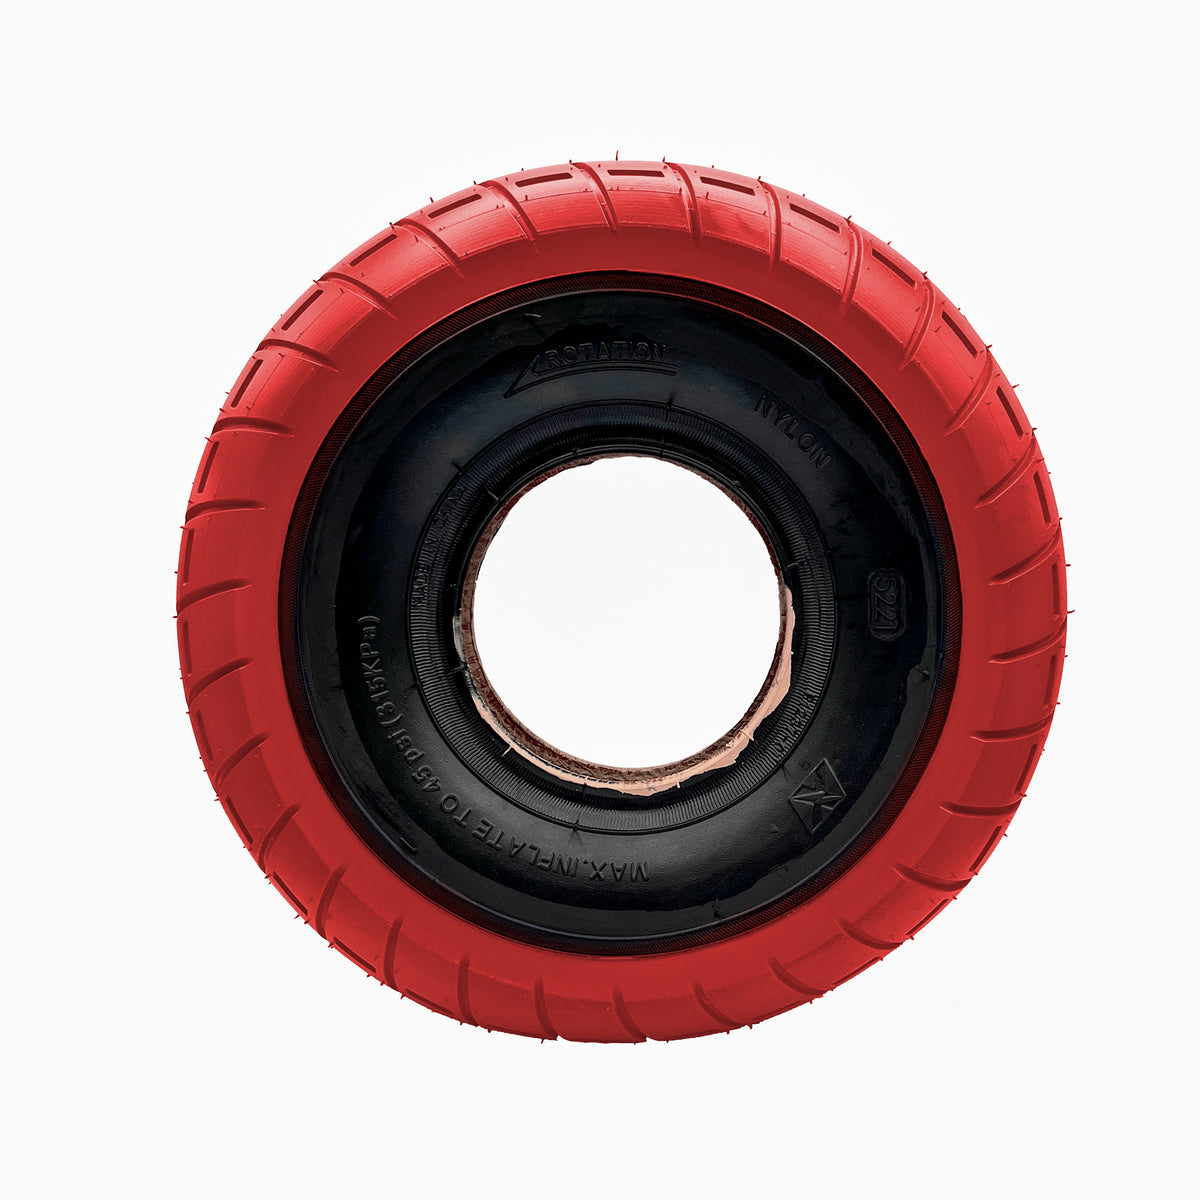 Fatboy BMX - Tire - Red